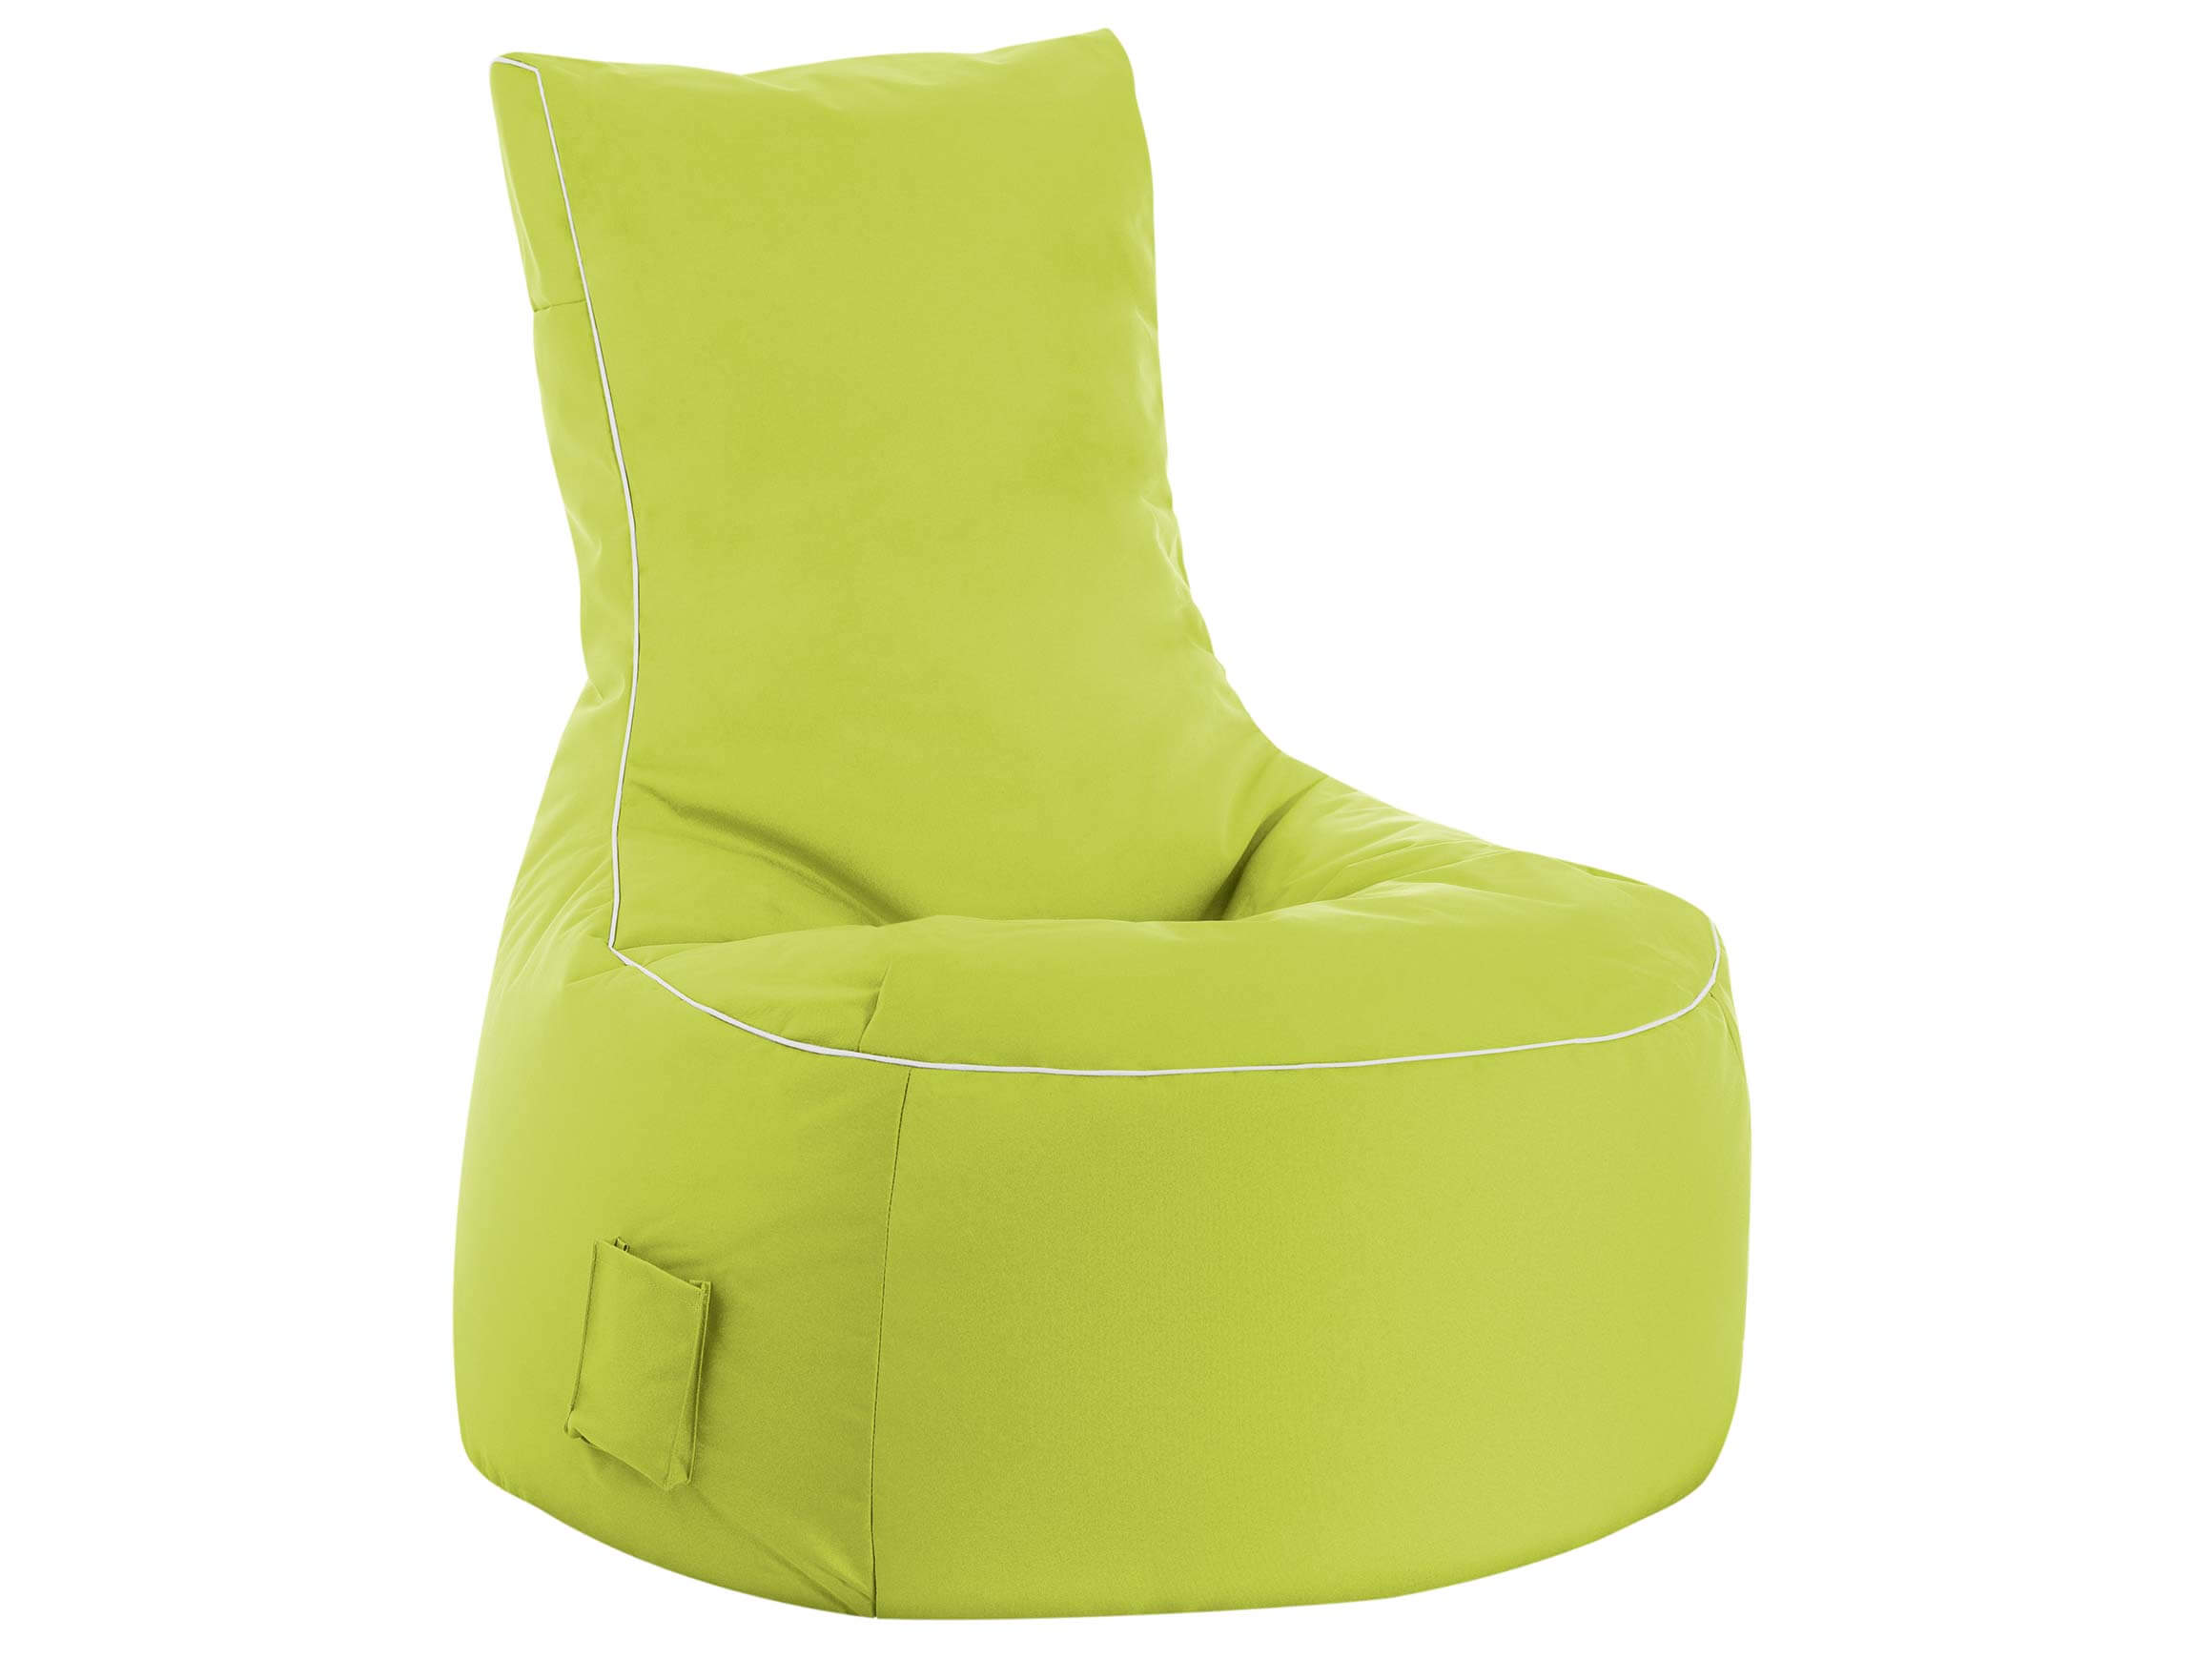 Outdoor-Sitzsack Scuba Swing Magma / Farbe: Grün